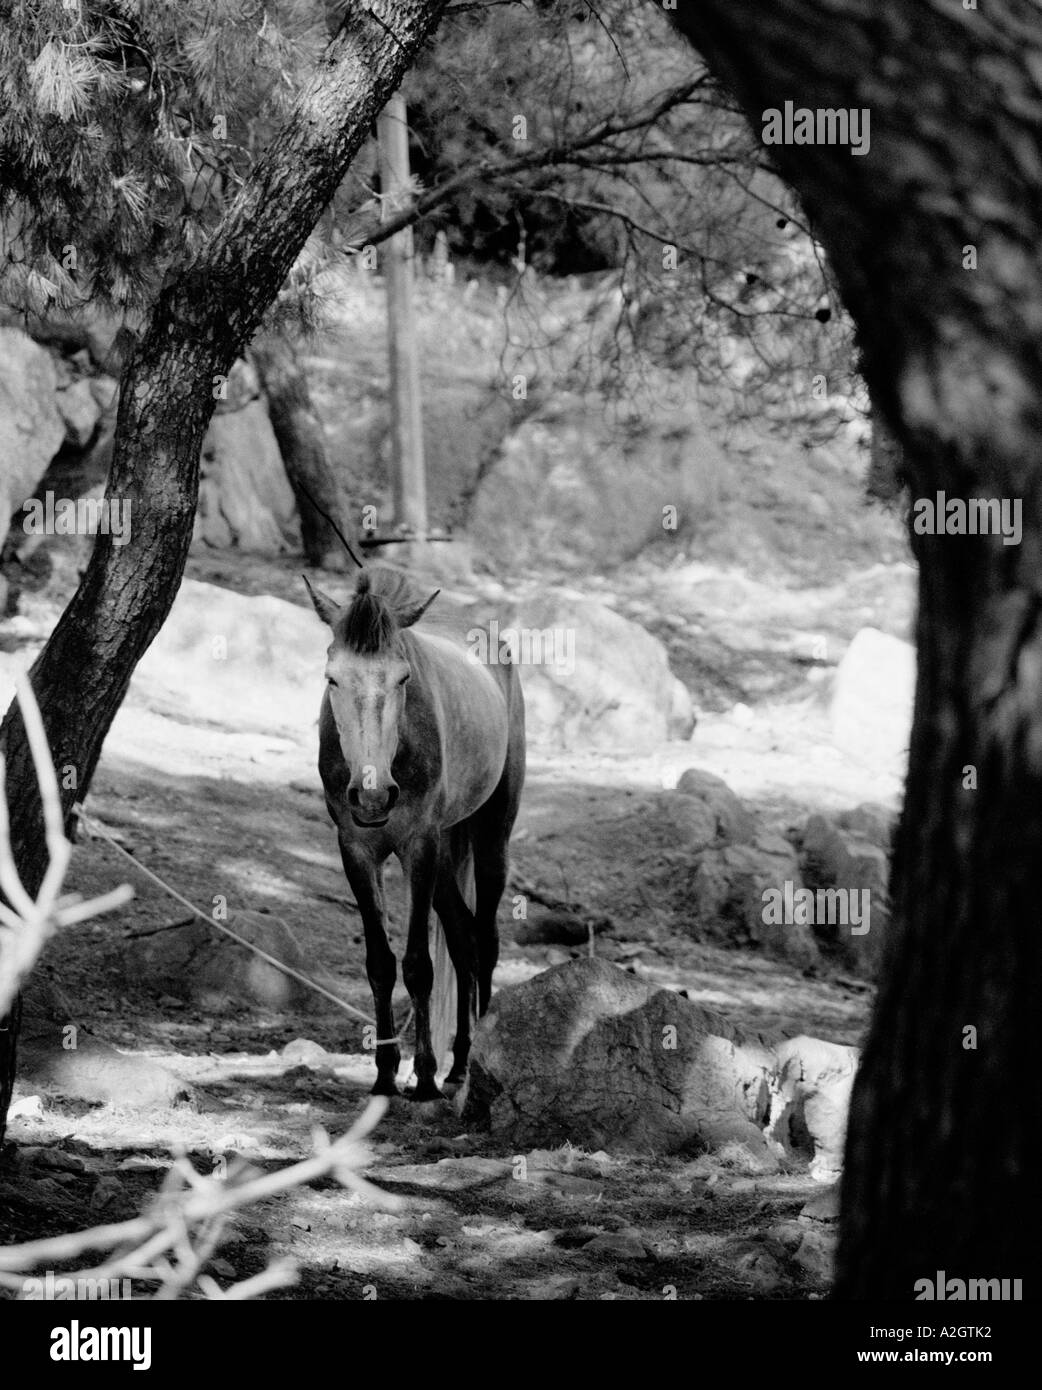 Donkey tied up in shade beneath trees Stock Photo